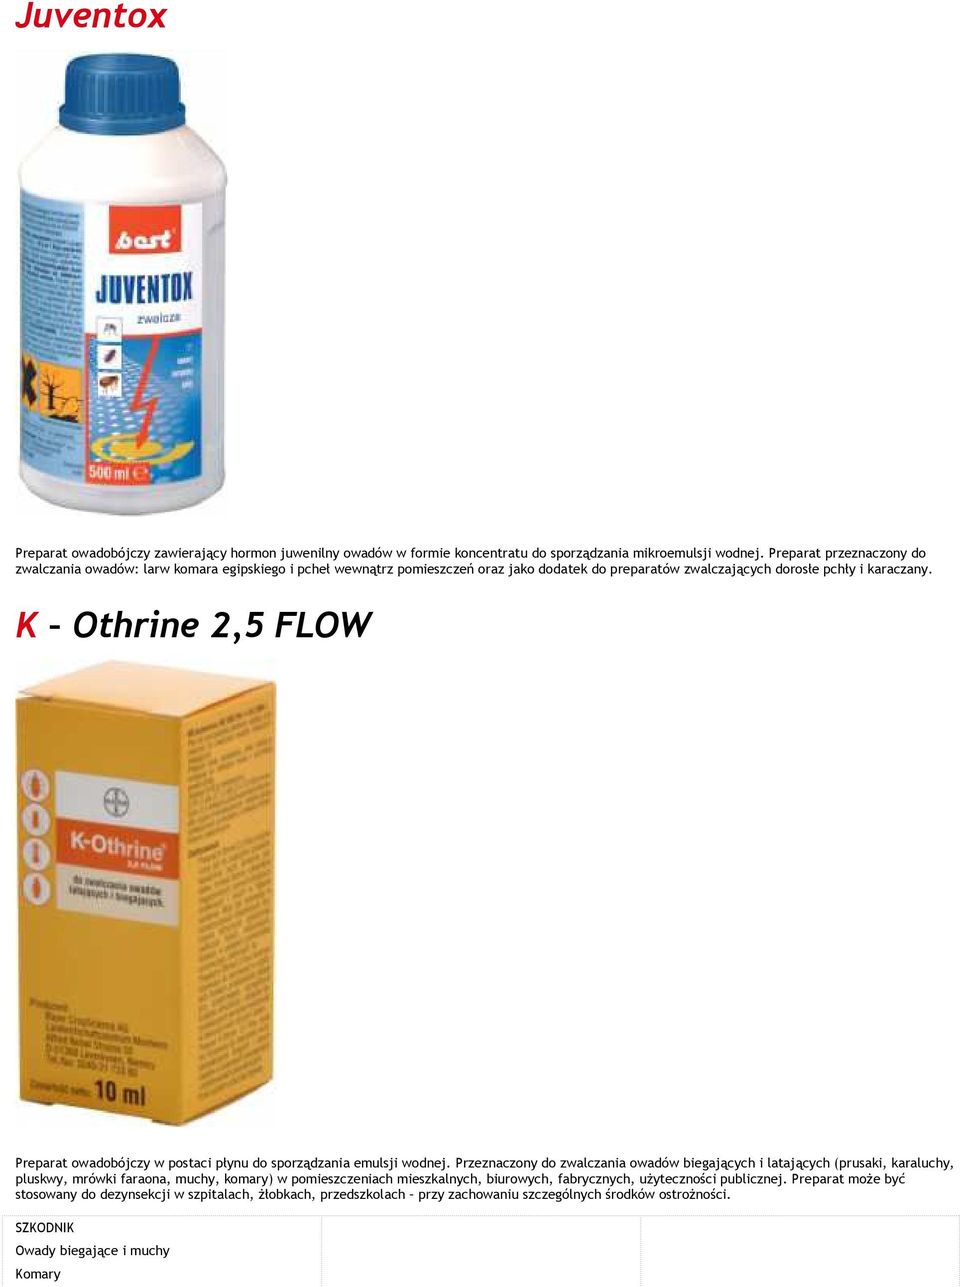 K Othrine 2,5 FLOW Preparat owadobójczy w postaci płynu do sporządzania emulsji wodnej.